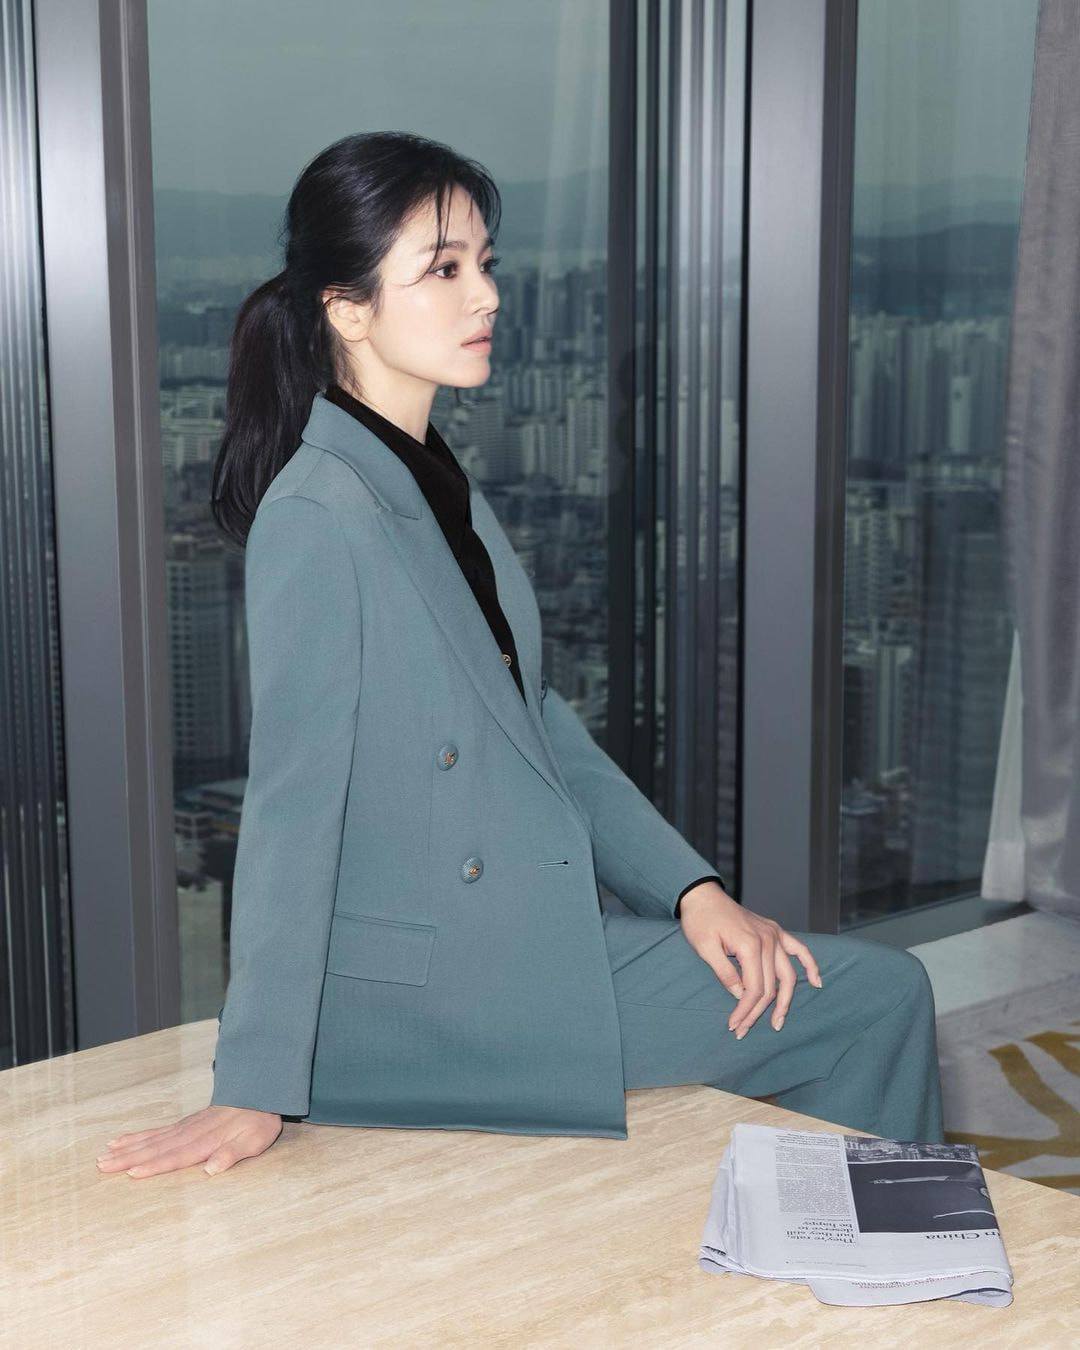 Mặc kệ tin đồn tình ái của chồng cũ, Song Hye Kyo lên đồ sang chảnh, ngày càng đẳng cấp - 5